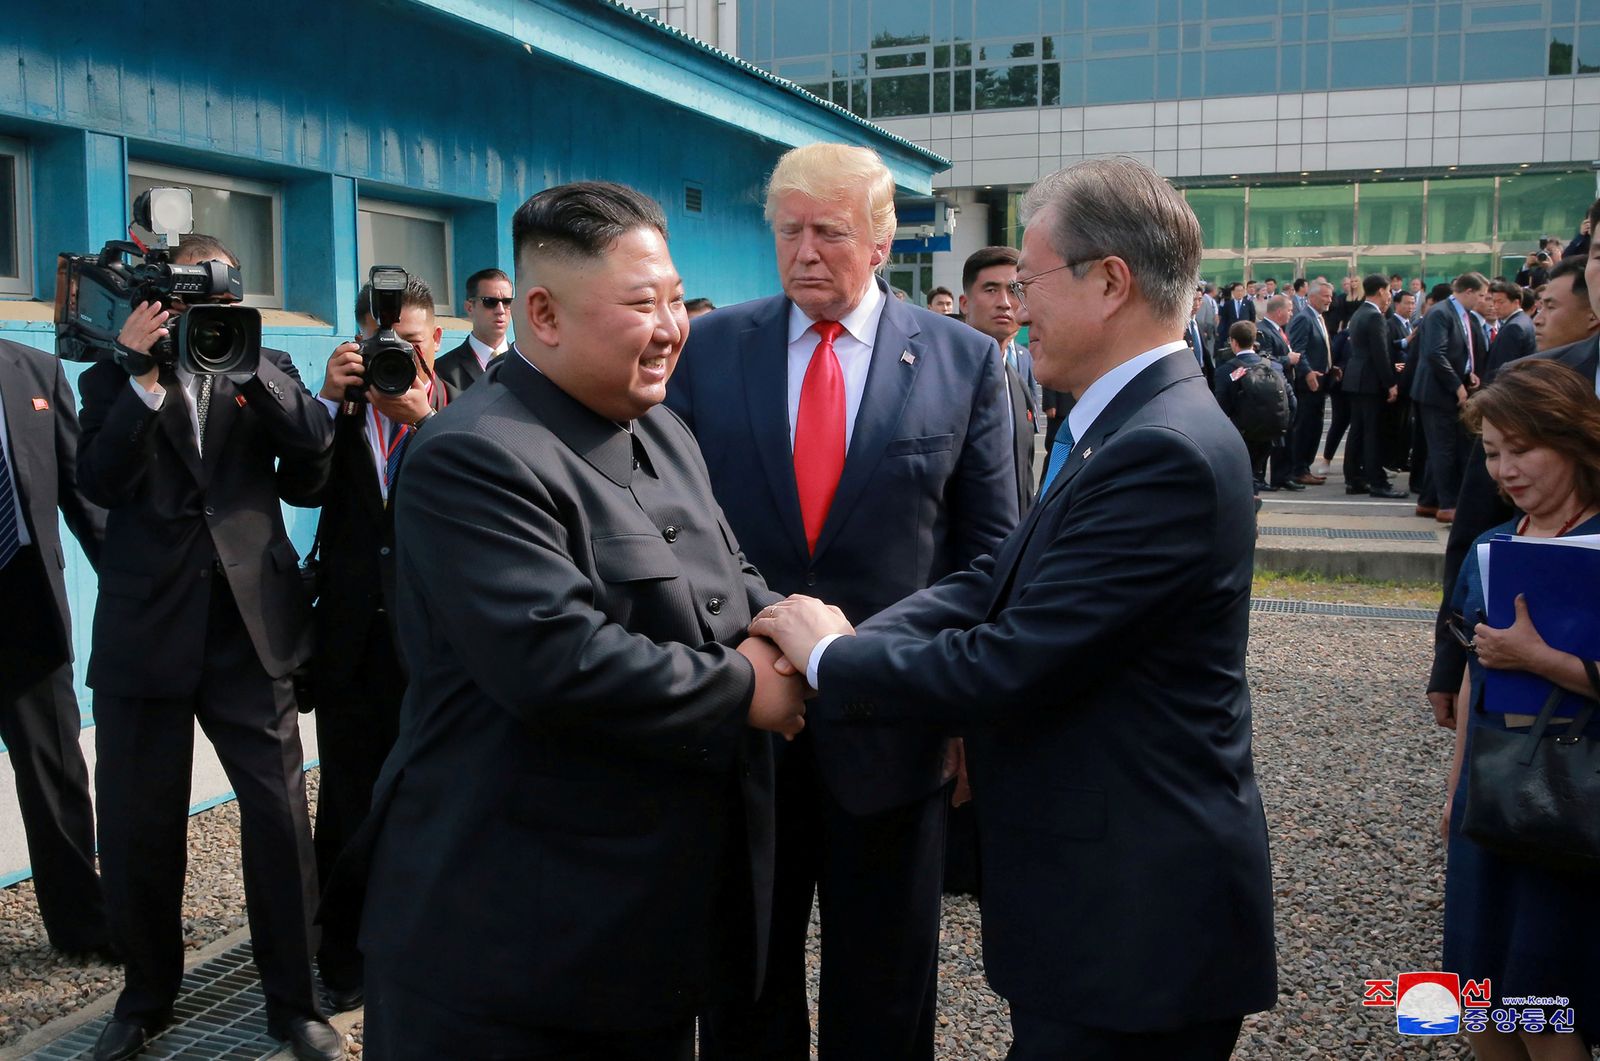 الرئيس الأميركي السابق دونالد ترمب متوسّطاً الرئيس الكوري الجنوبي مون جاي إن (يمين) والزعيم الكوري الشمالي كيم جونغ أون، في المنطقة المنزوعة السلاح بين الكوريتين - يونيو 2019 - REUTERS